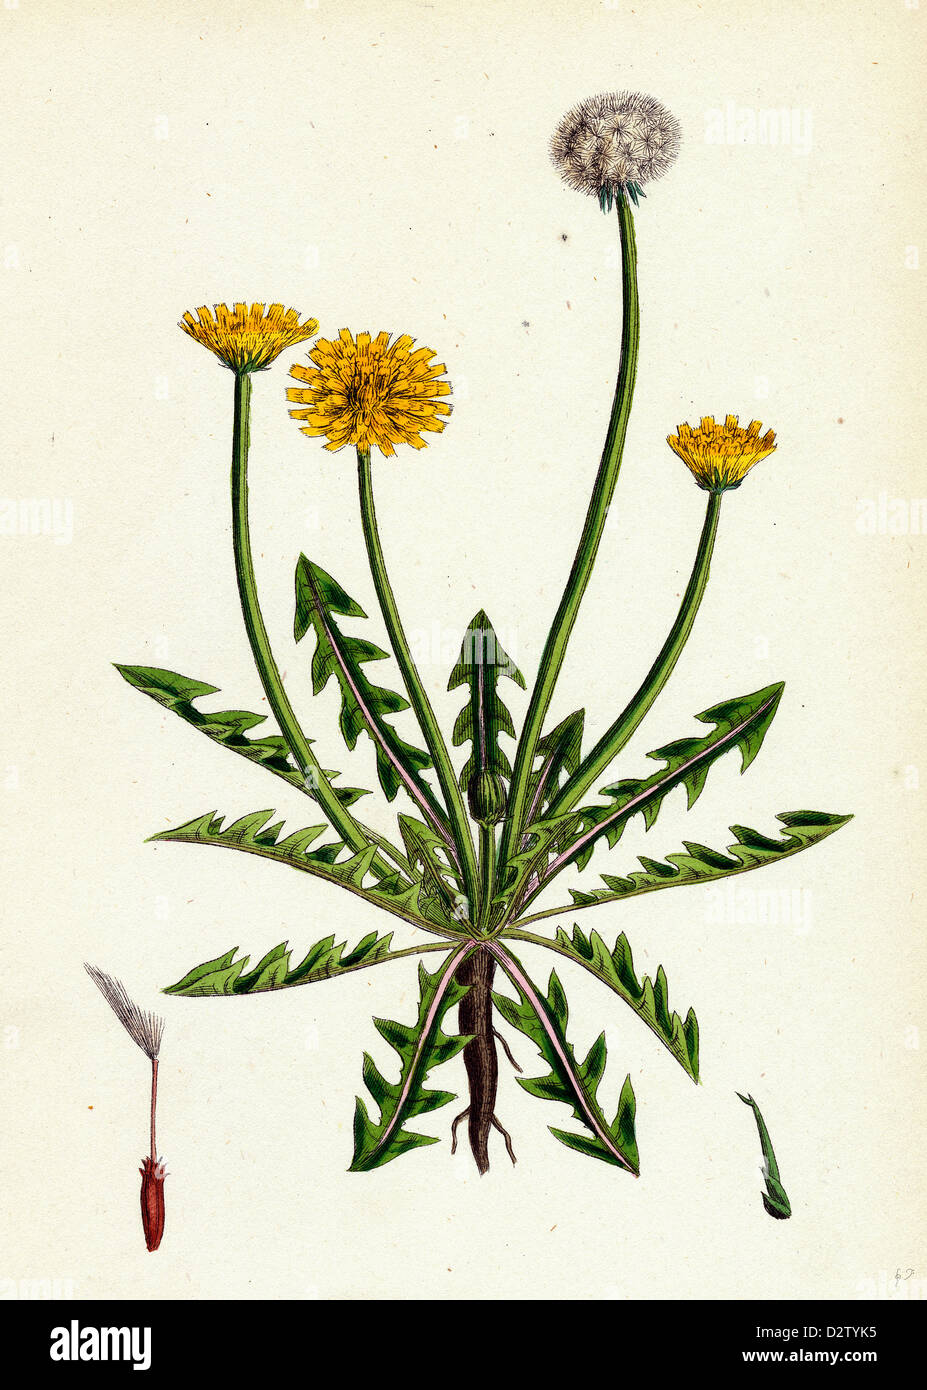 Taraxacum officinale, var. erythrospermum; Common Dandelion, var. B. Stock Photo